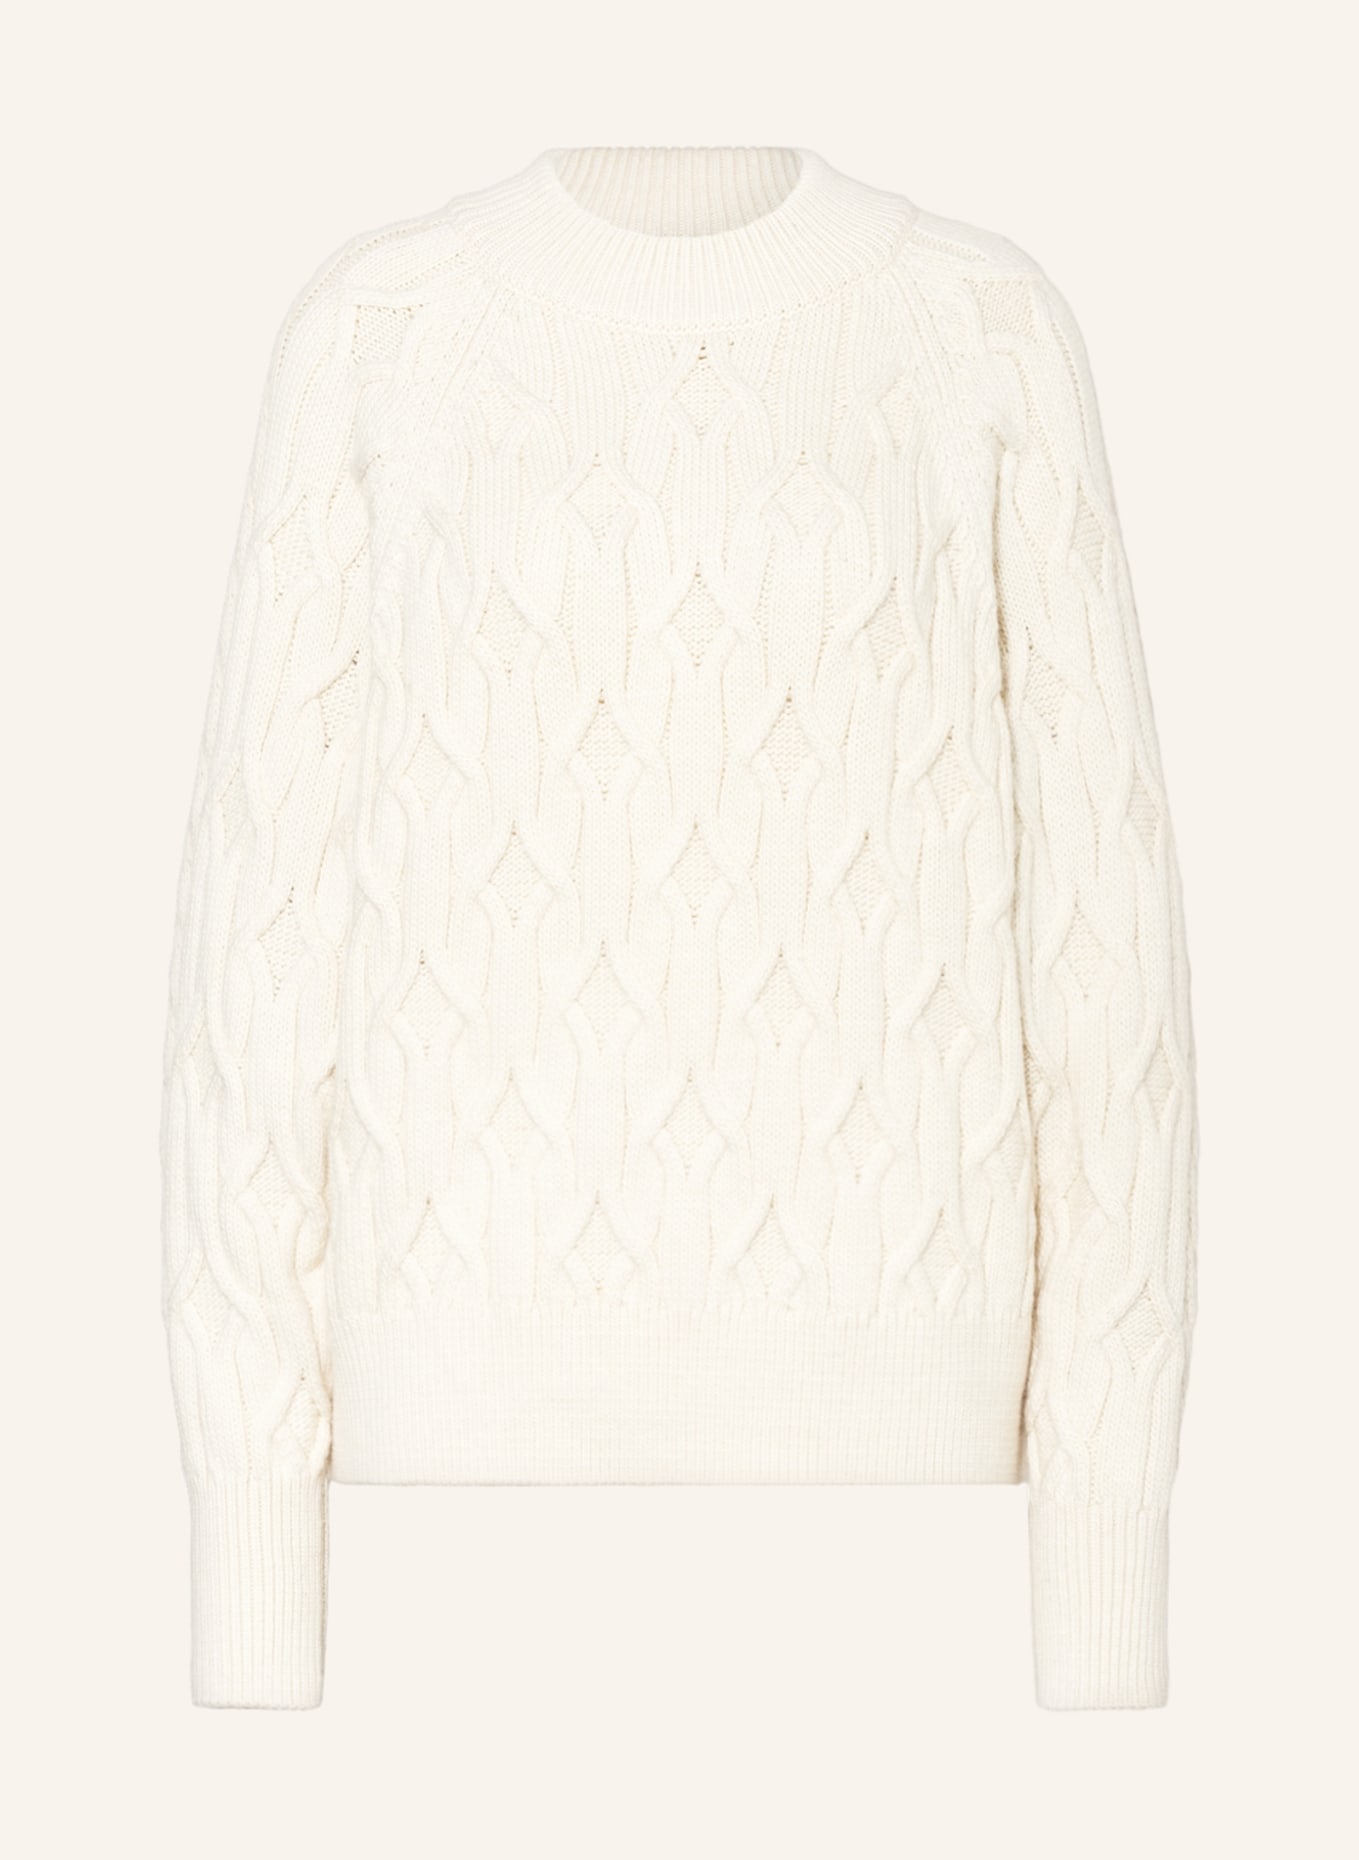 COS Sweater, Color: ECRU (Image 1)